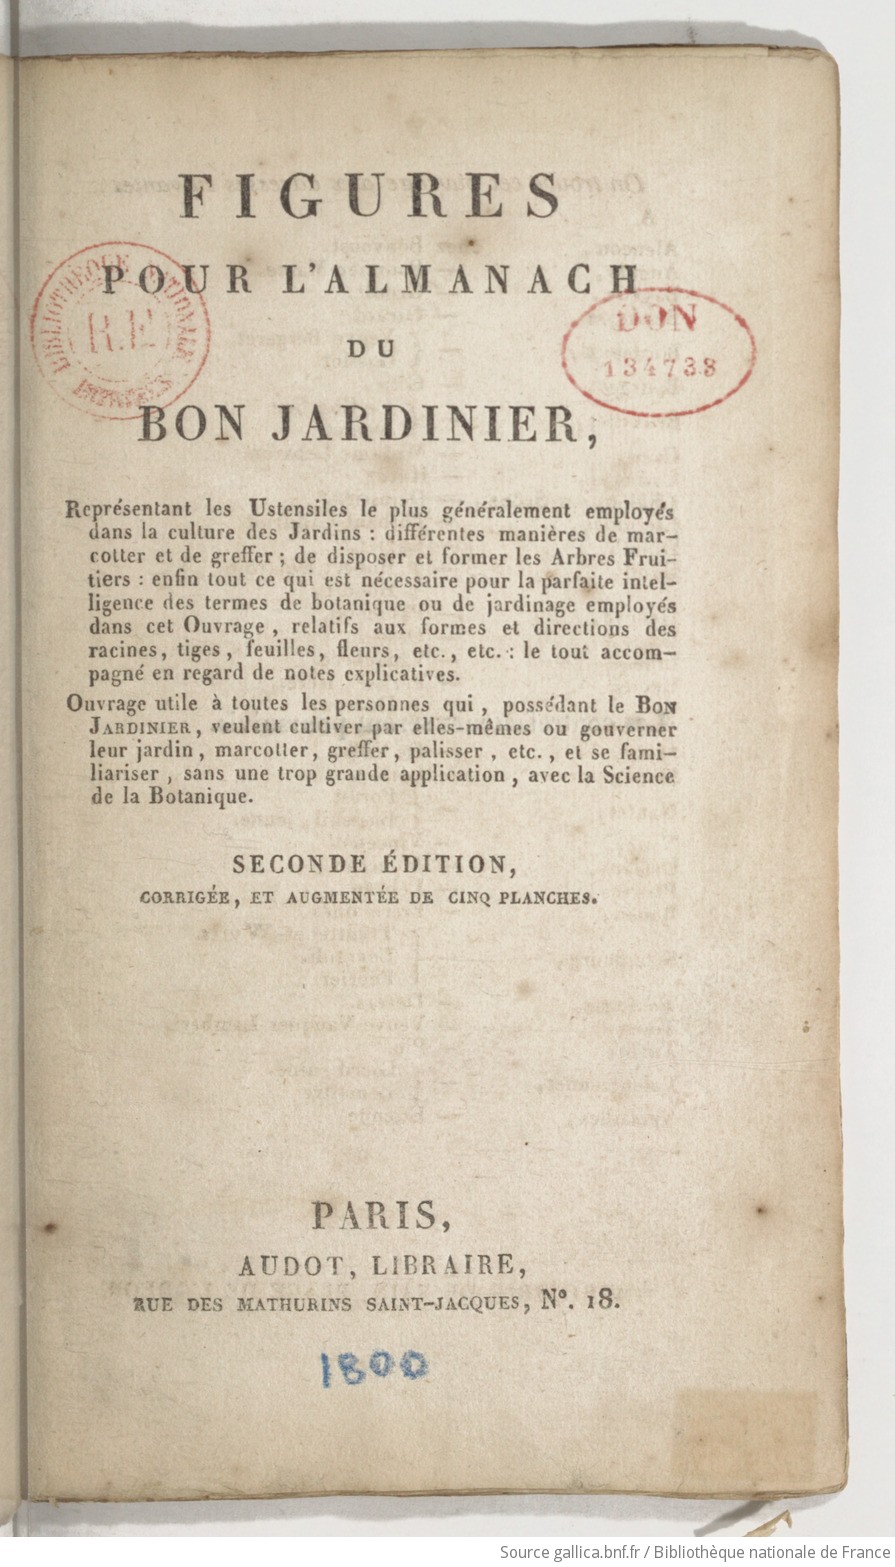 FIGURES POUR L'ALMANACH DU BON JARDINIER, by (AUDOT, Louis E